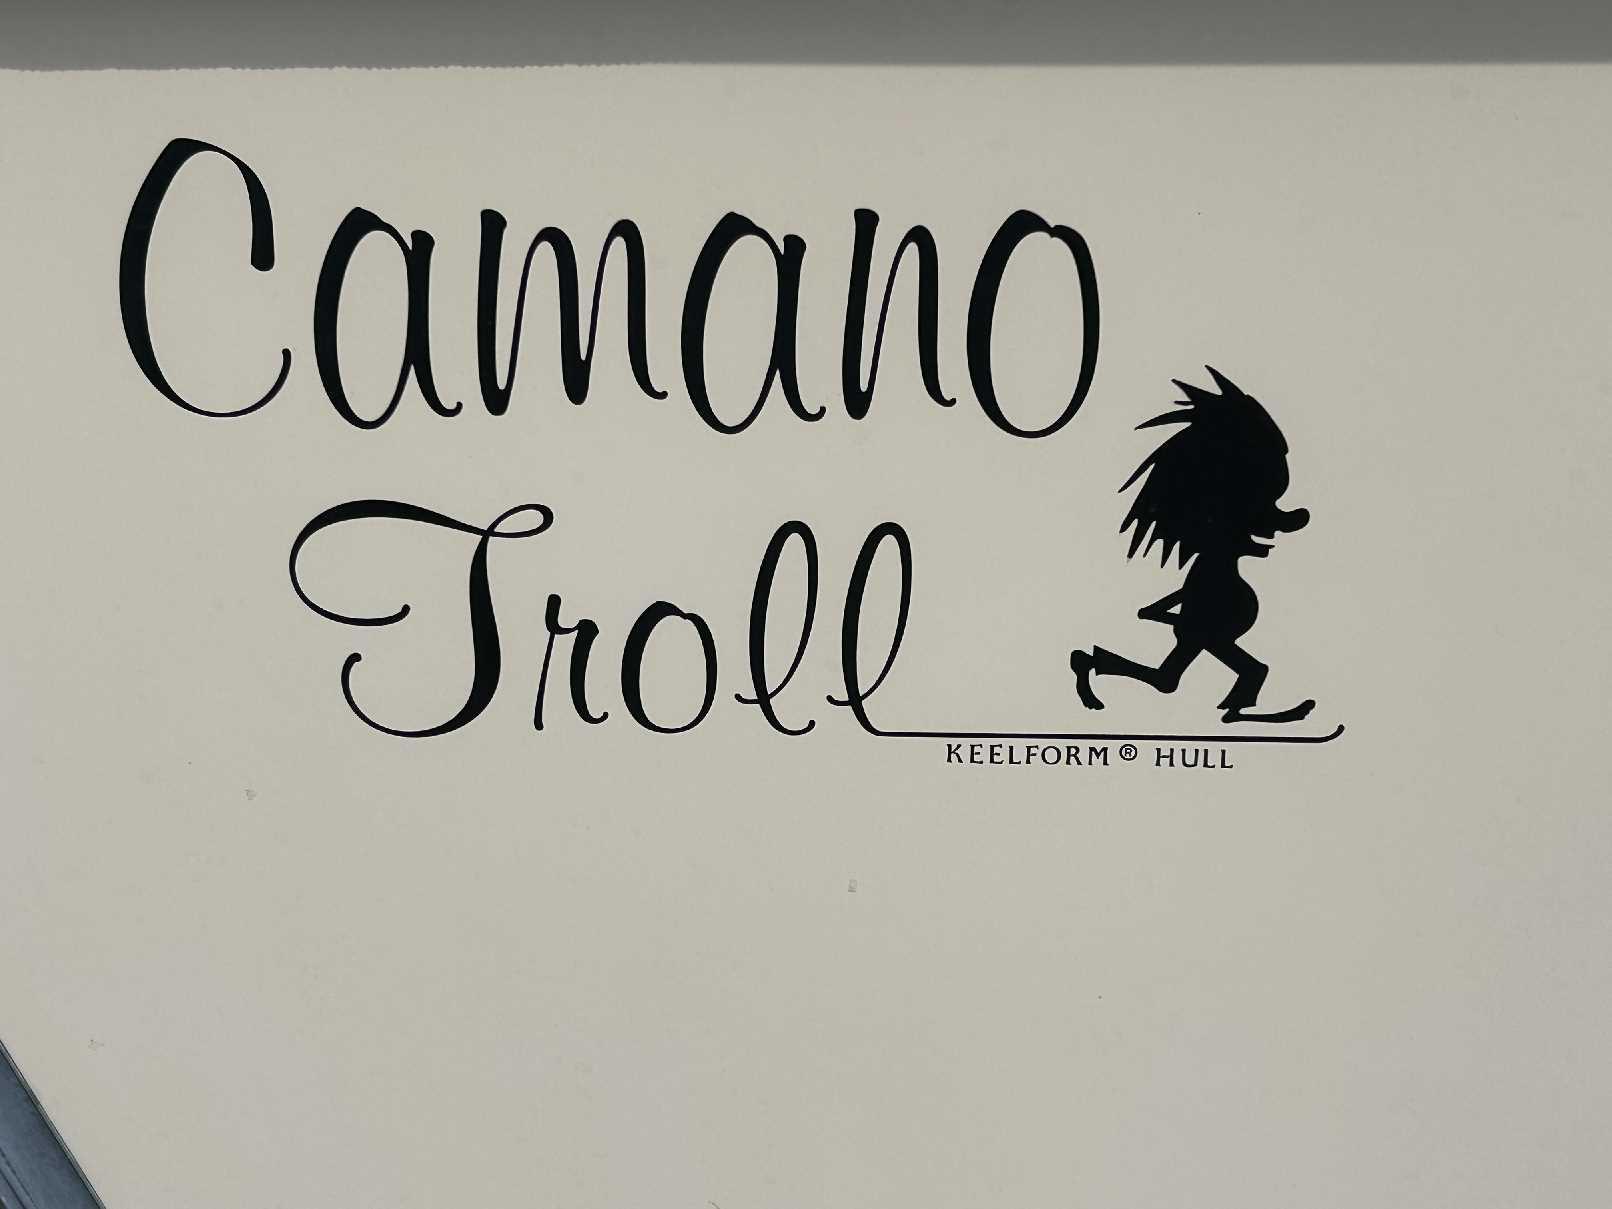 2005 Camano Troll